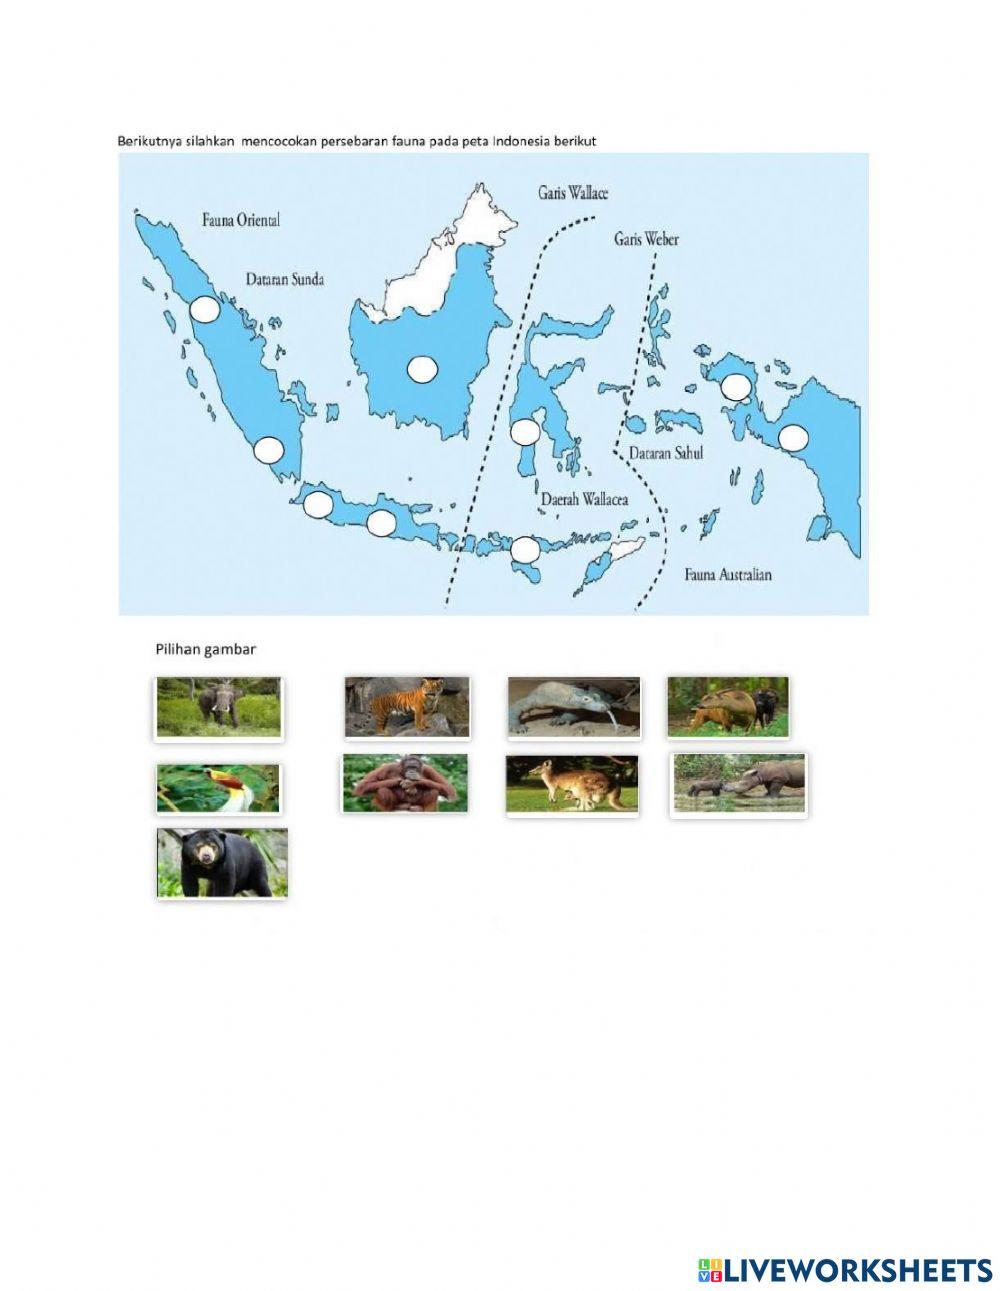 Persebaran fauna di indonesia